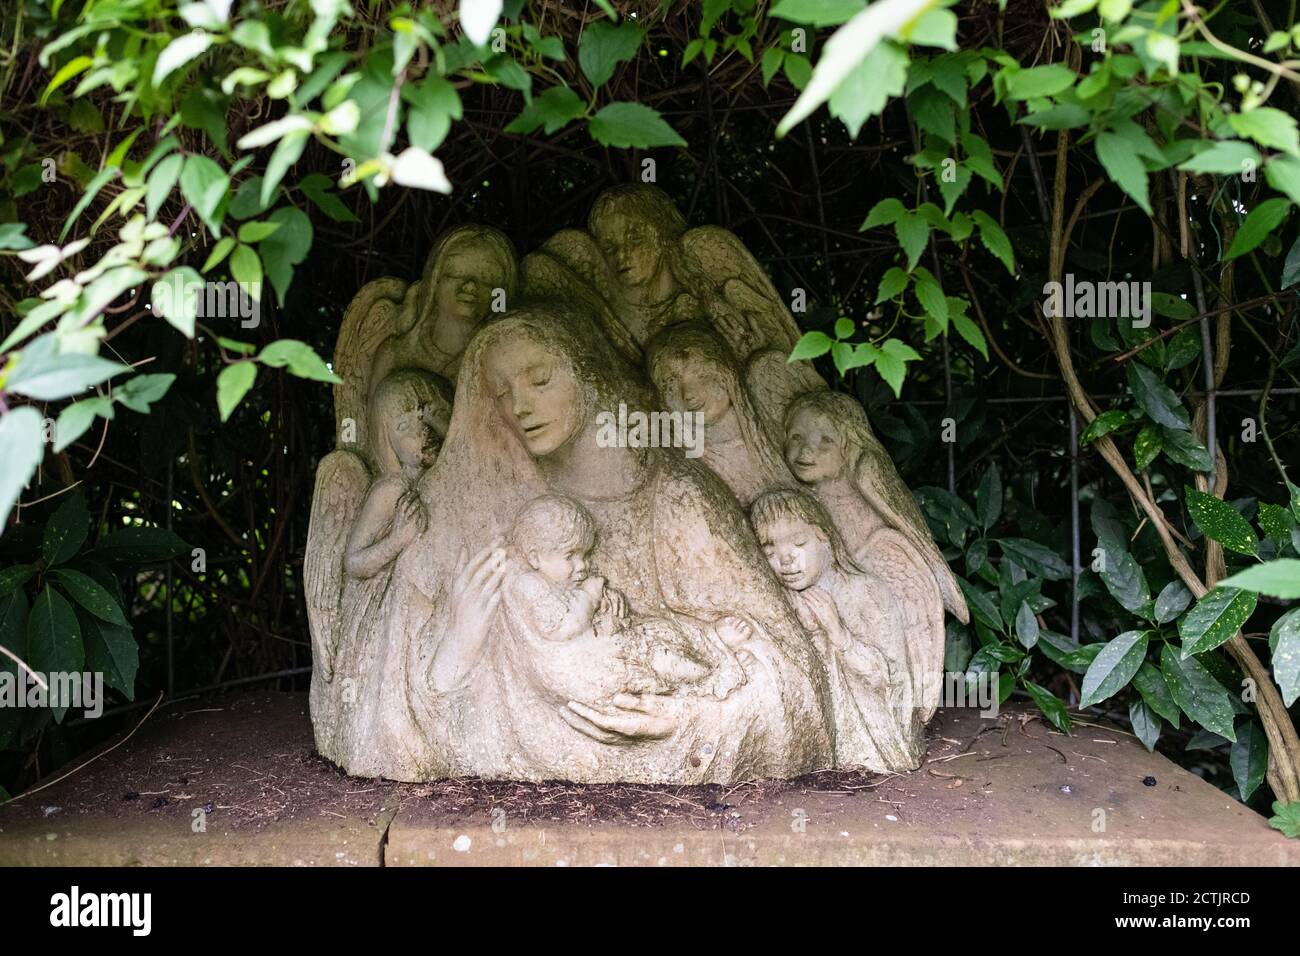 Adorazione della scultura dei Santi Innocenti di Josefina de Vasconcellos nel Giardino del Bambino addormentato, Chiesa del Priorato di St Bees, St Bees, Cumbria, Inghilterra Foto Stock